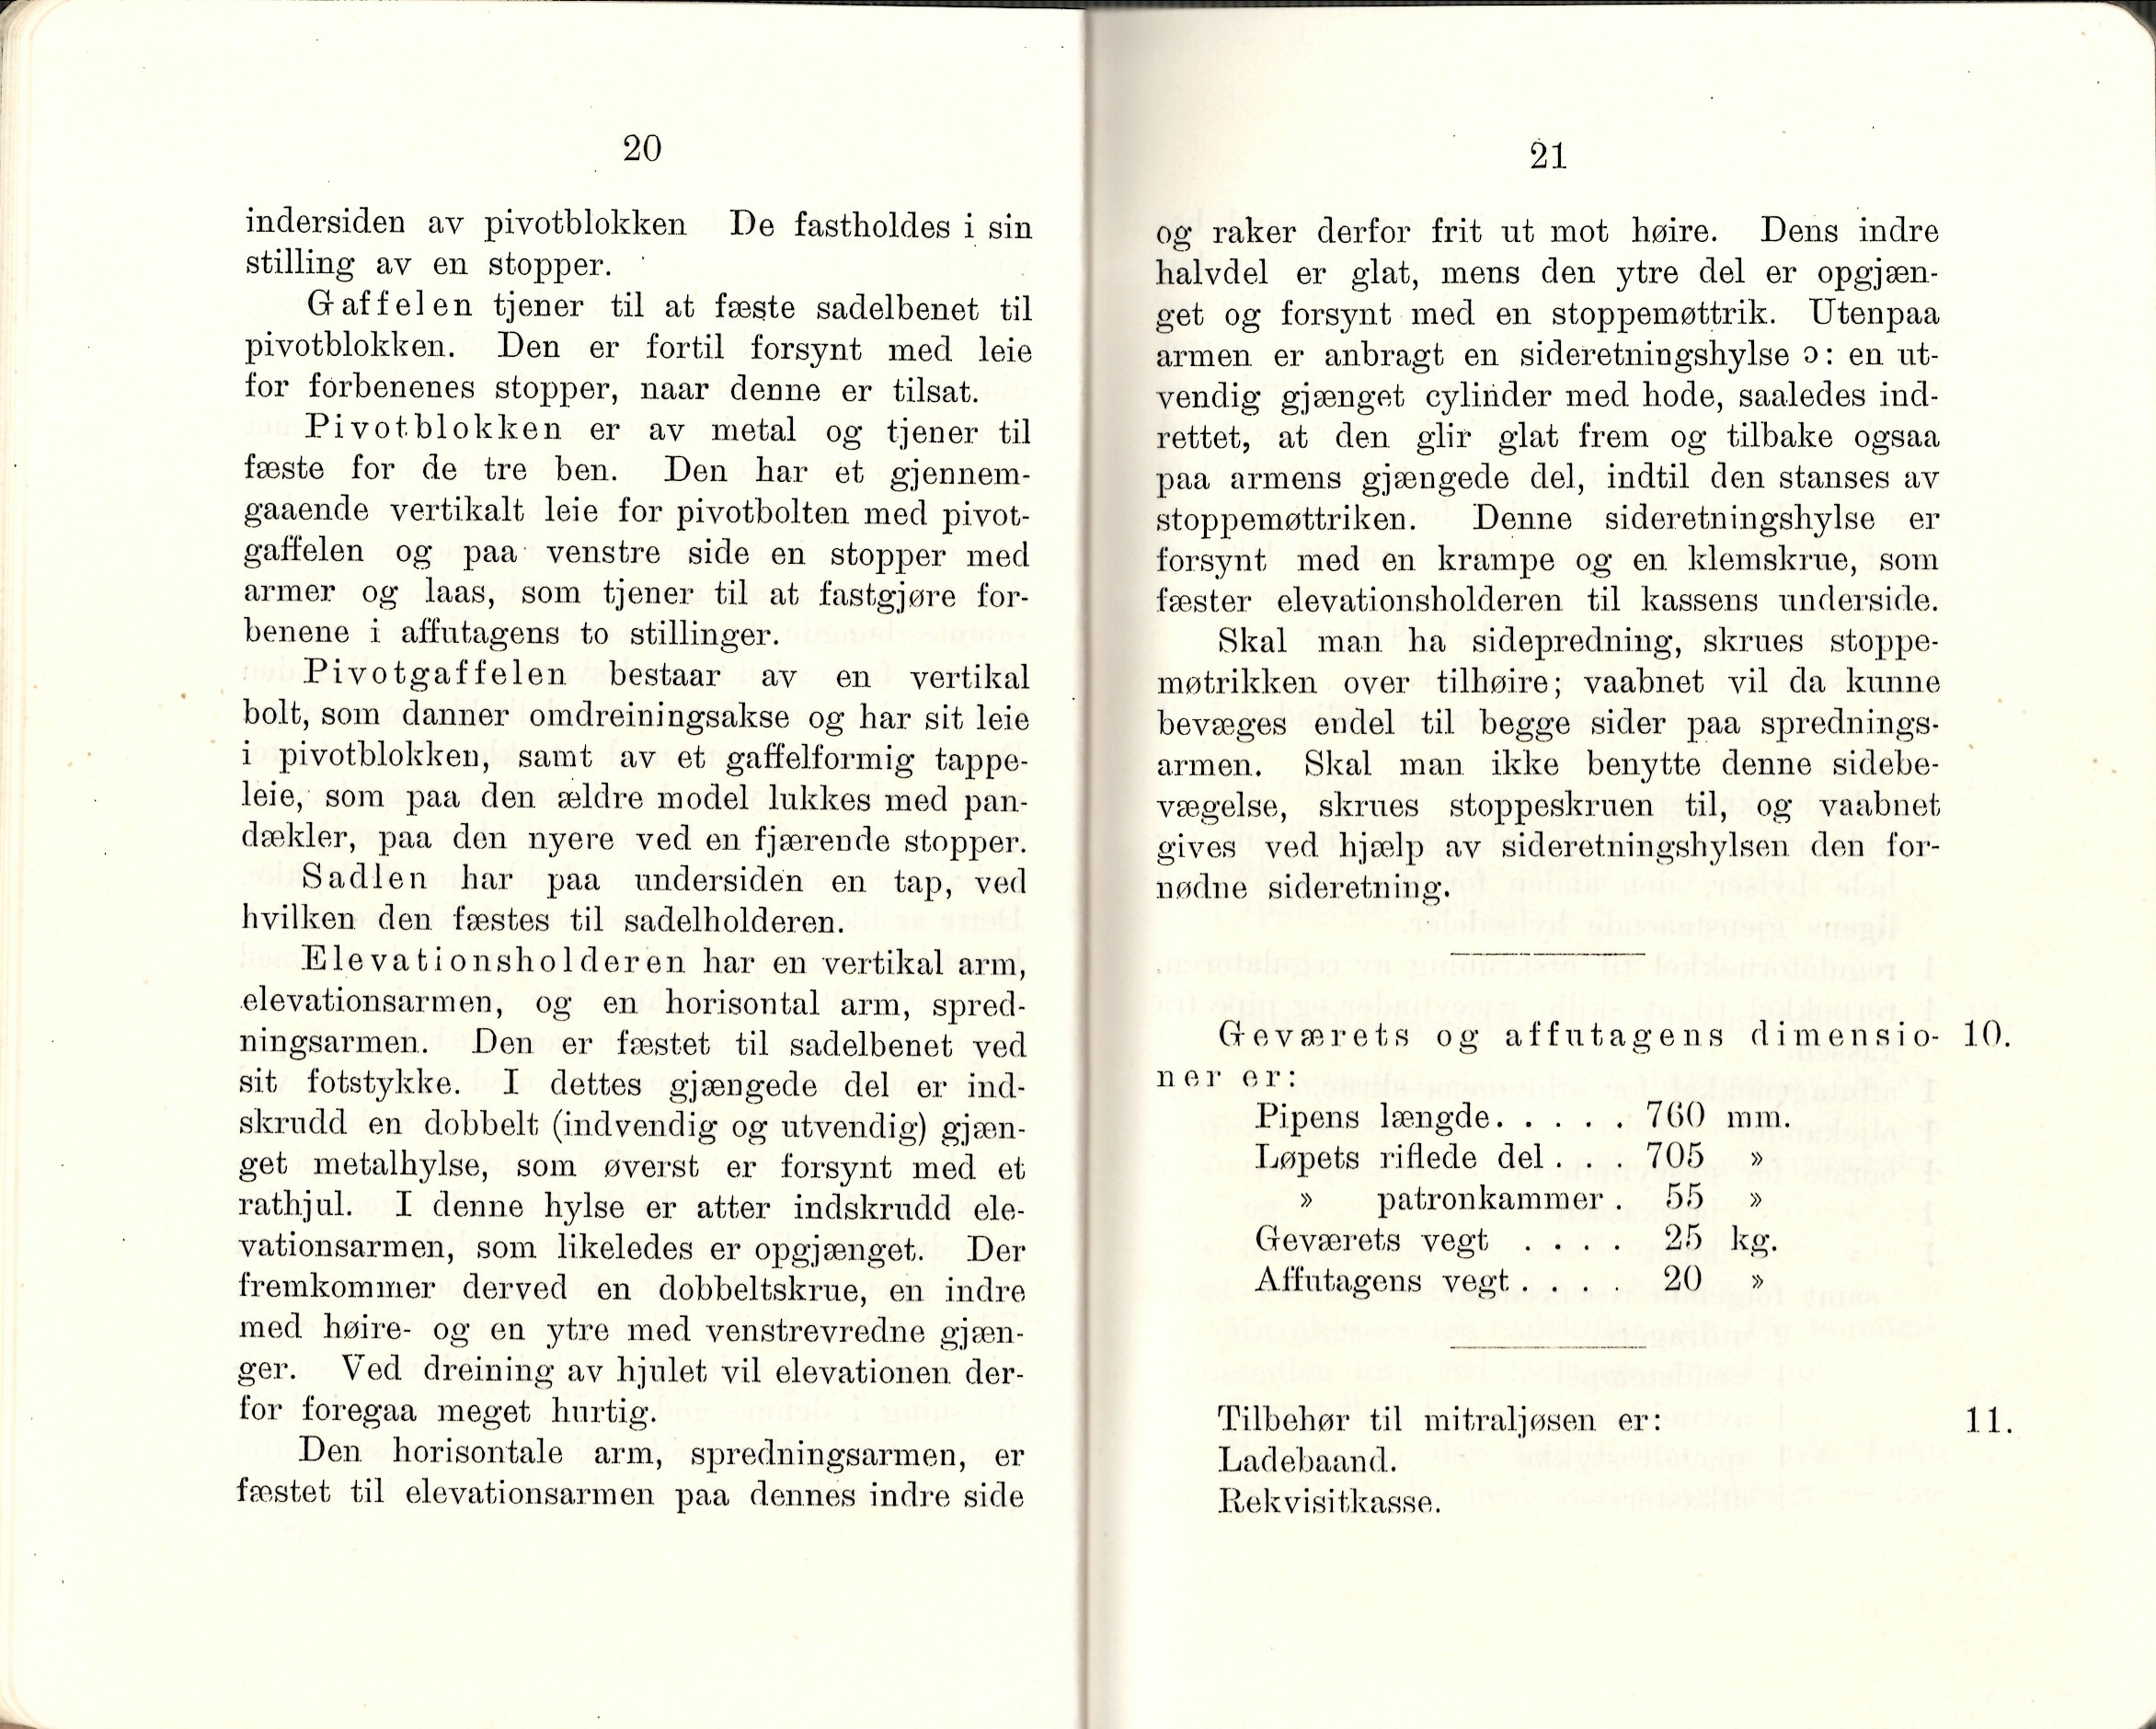 ./doc/reglement/Kav1910/Haandbok-Kav-Mitr-1910-12.jpg